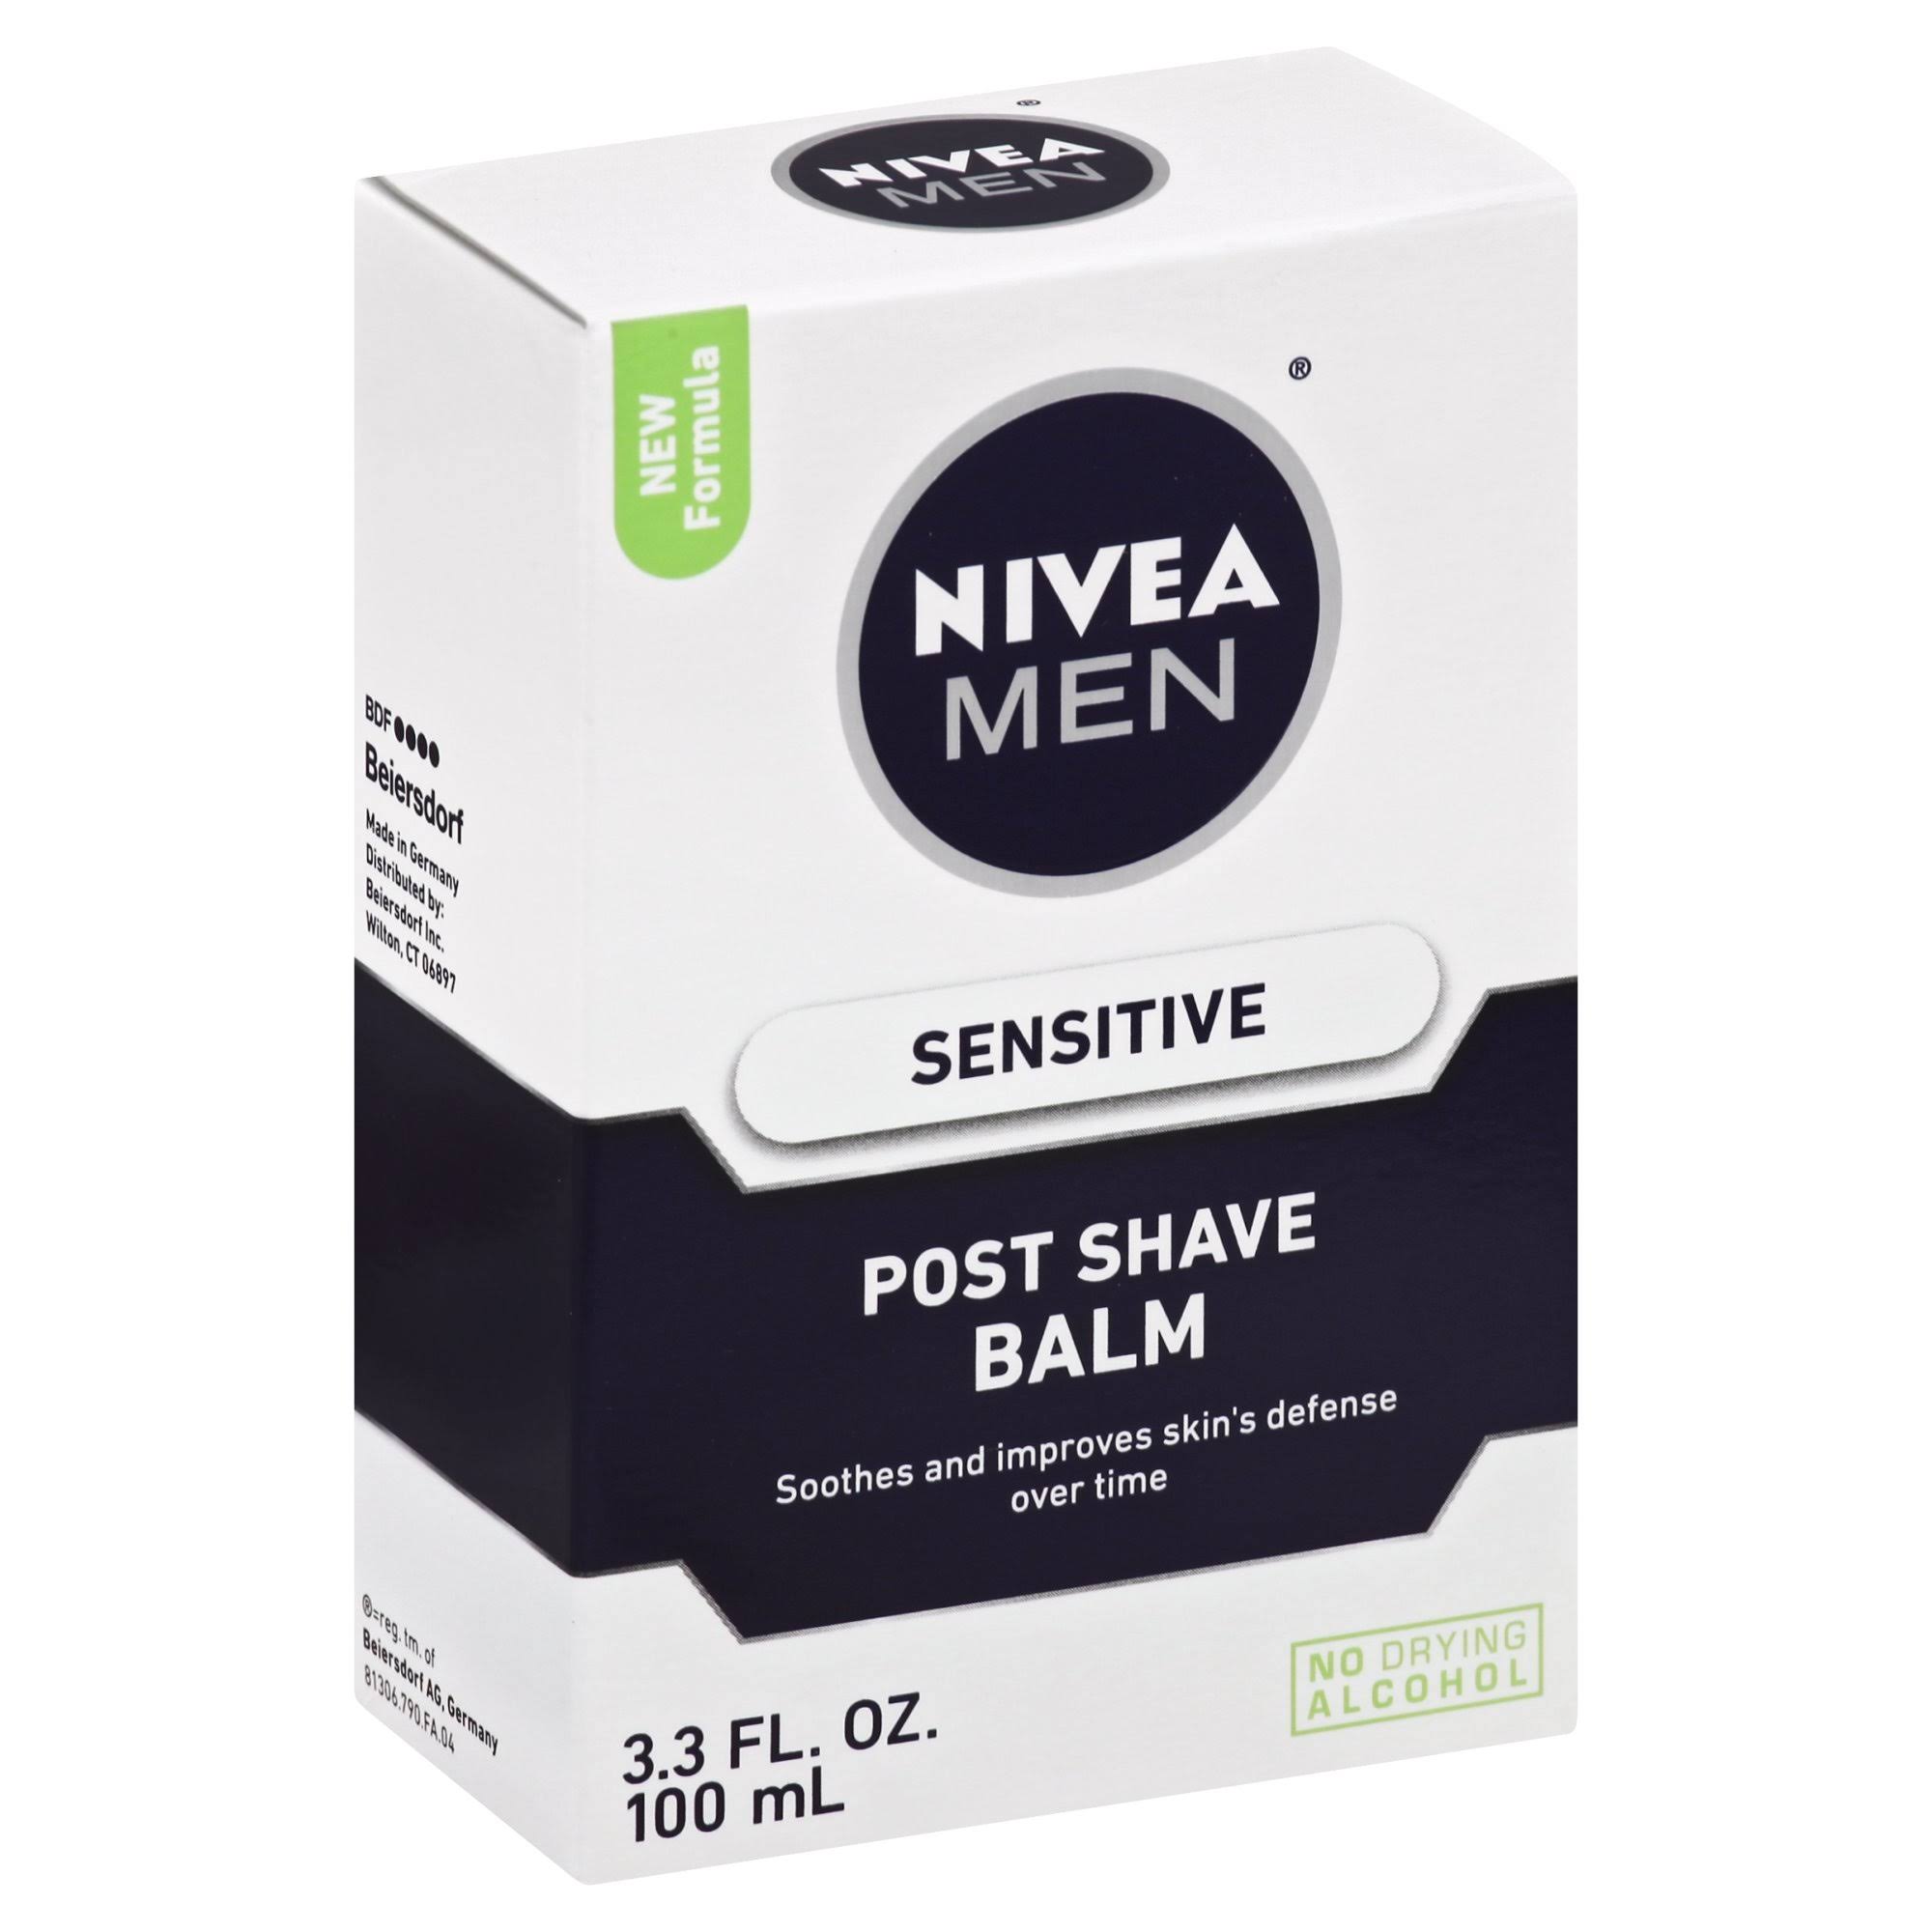 Nivea Men Post Shave Balm - Sensitive, 3.3oz